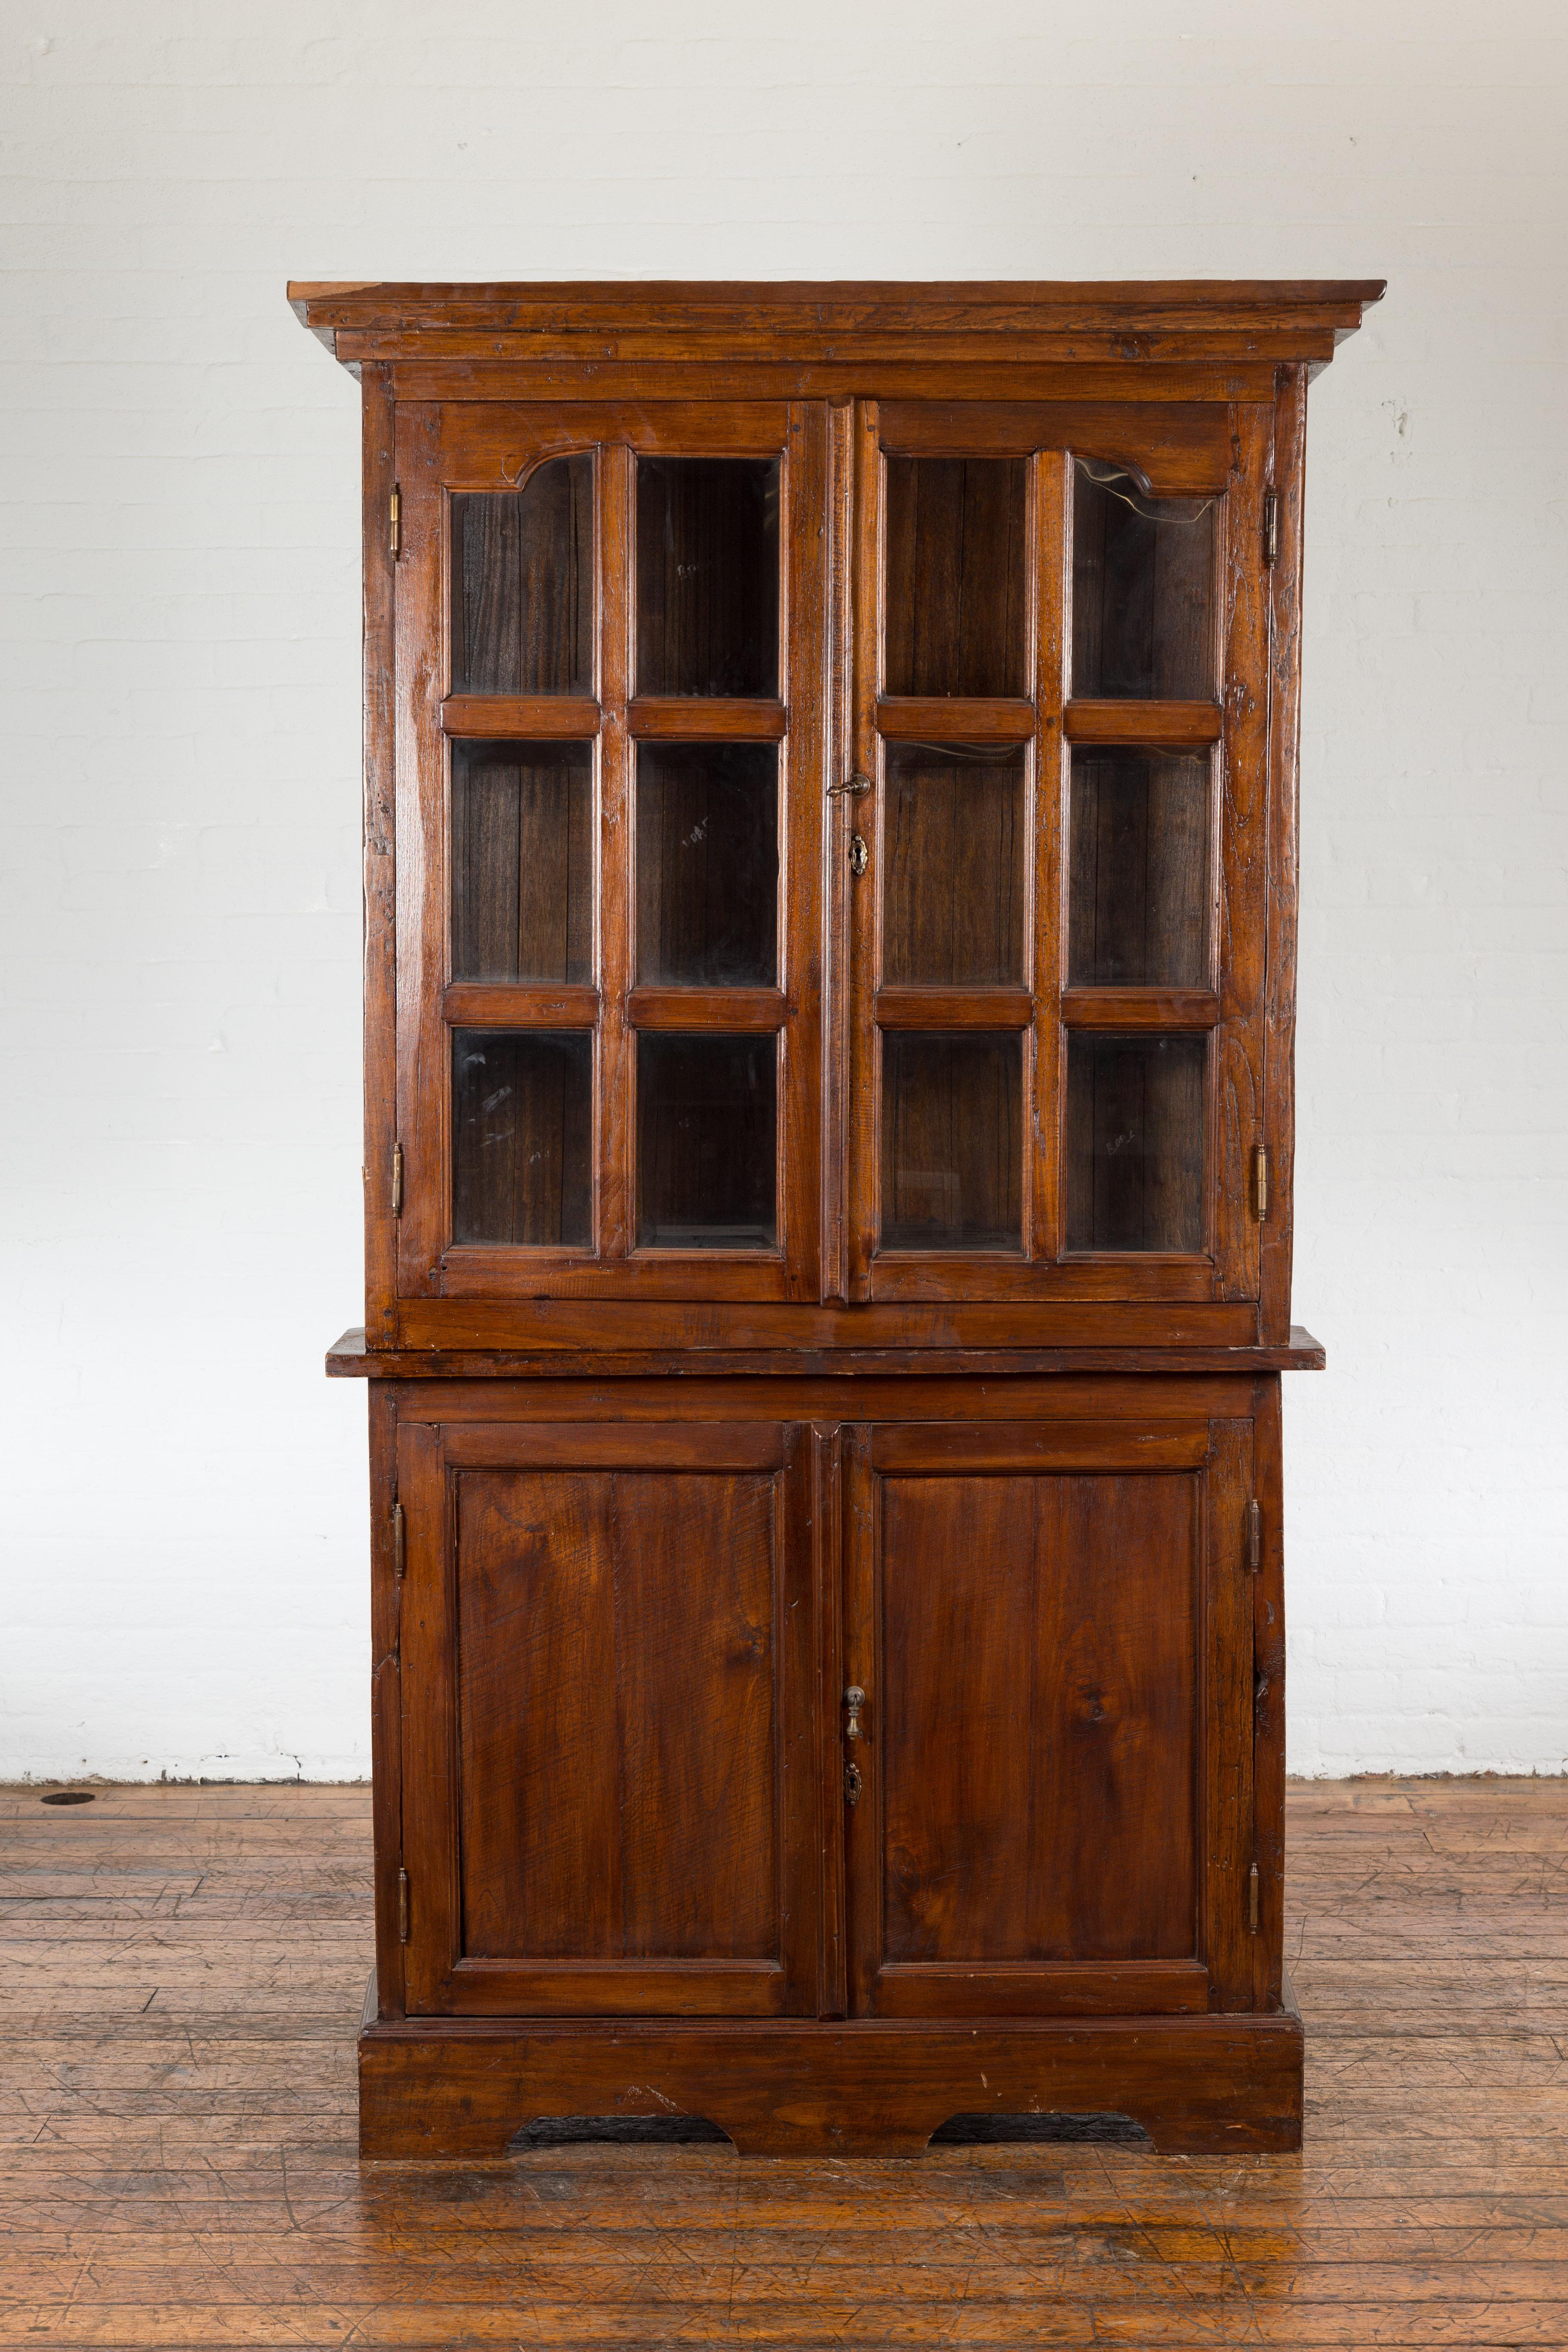 Ancienne vitrine d'angle javanaise en deux parties de la période Coloni hollandaise du début du 20e siècle, avec des portes en verre à panneaux dans la partie supérieure et des portes en bois dans la partie inférieure. Cette ancienne armoire d'angle